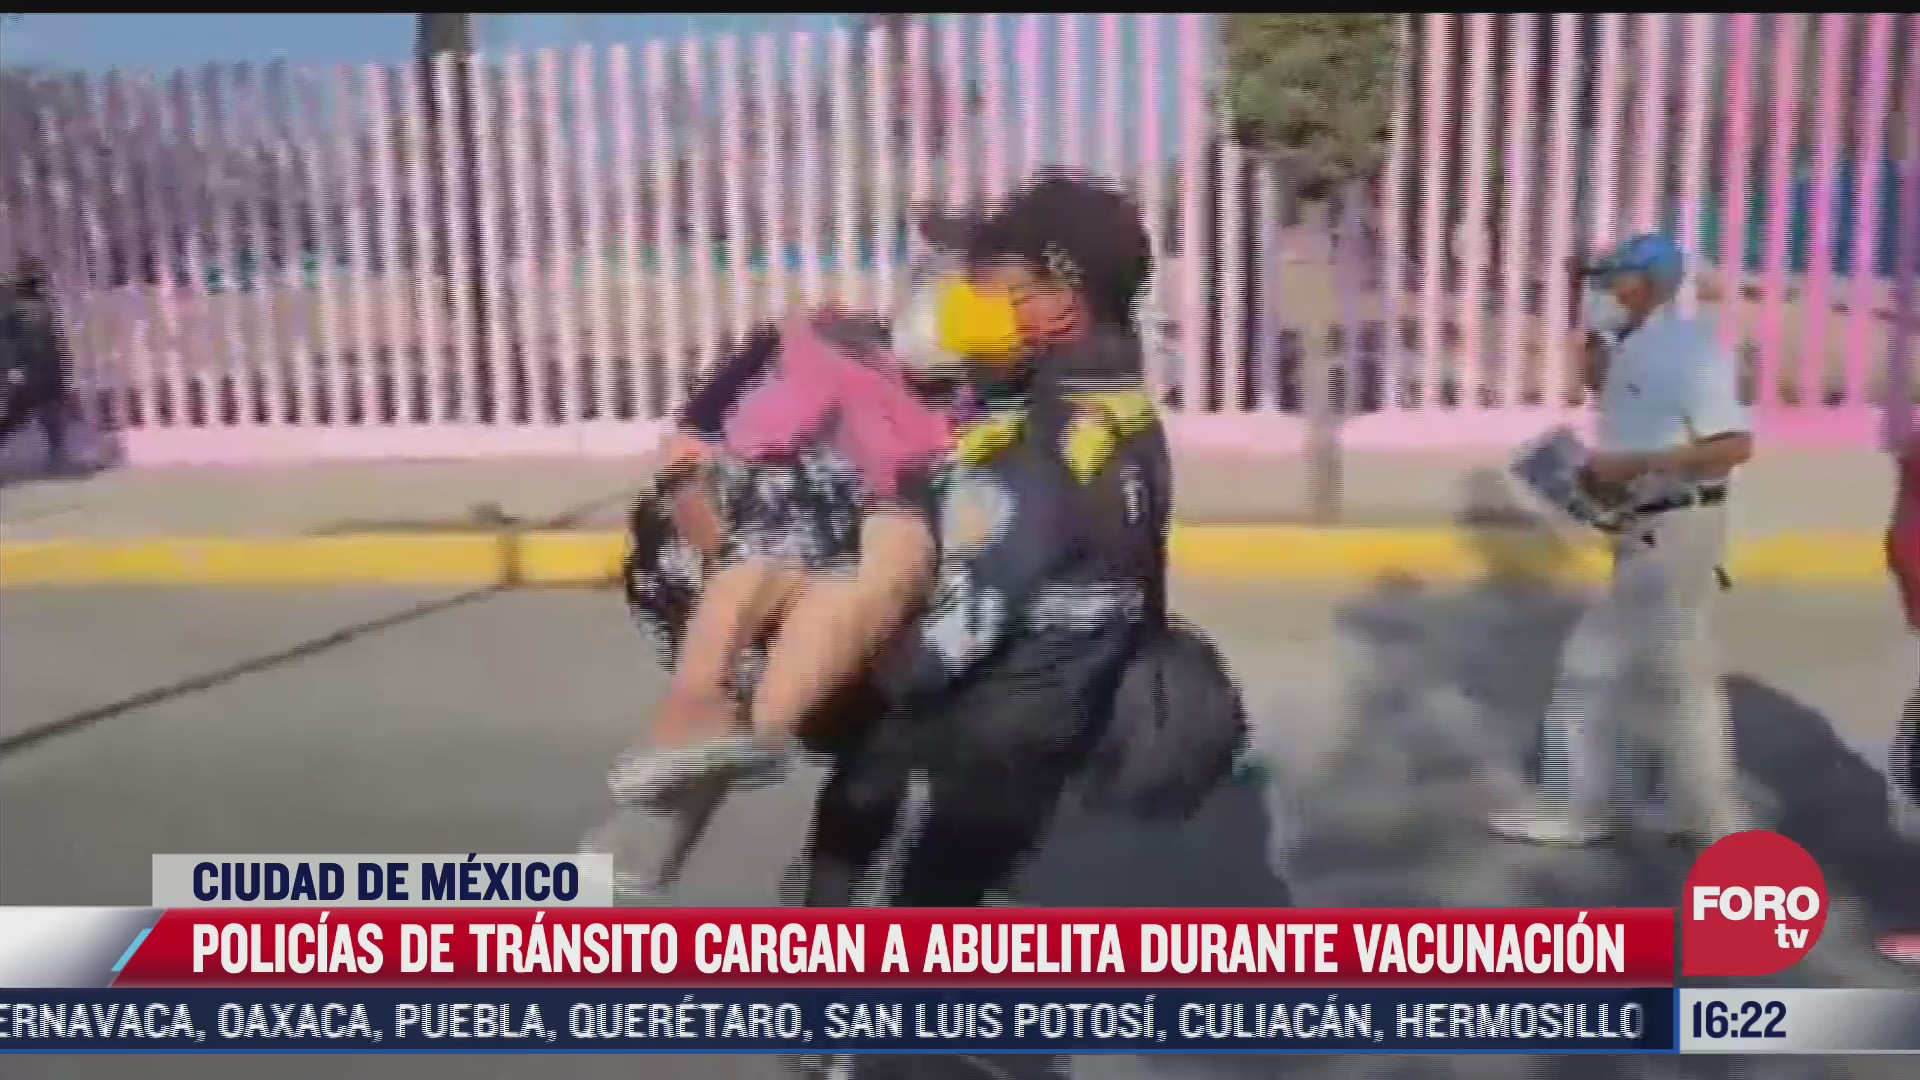 policias de transito cargan a abuelita durante vacunacion en iztapalapa